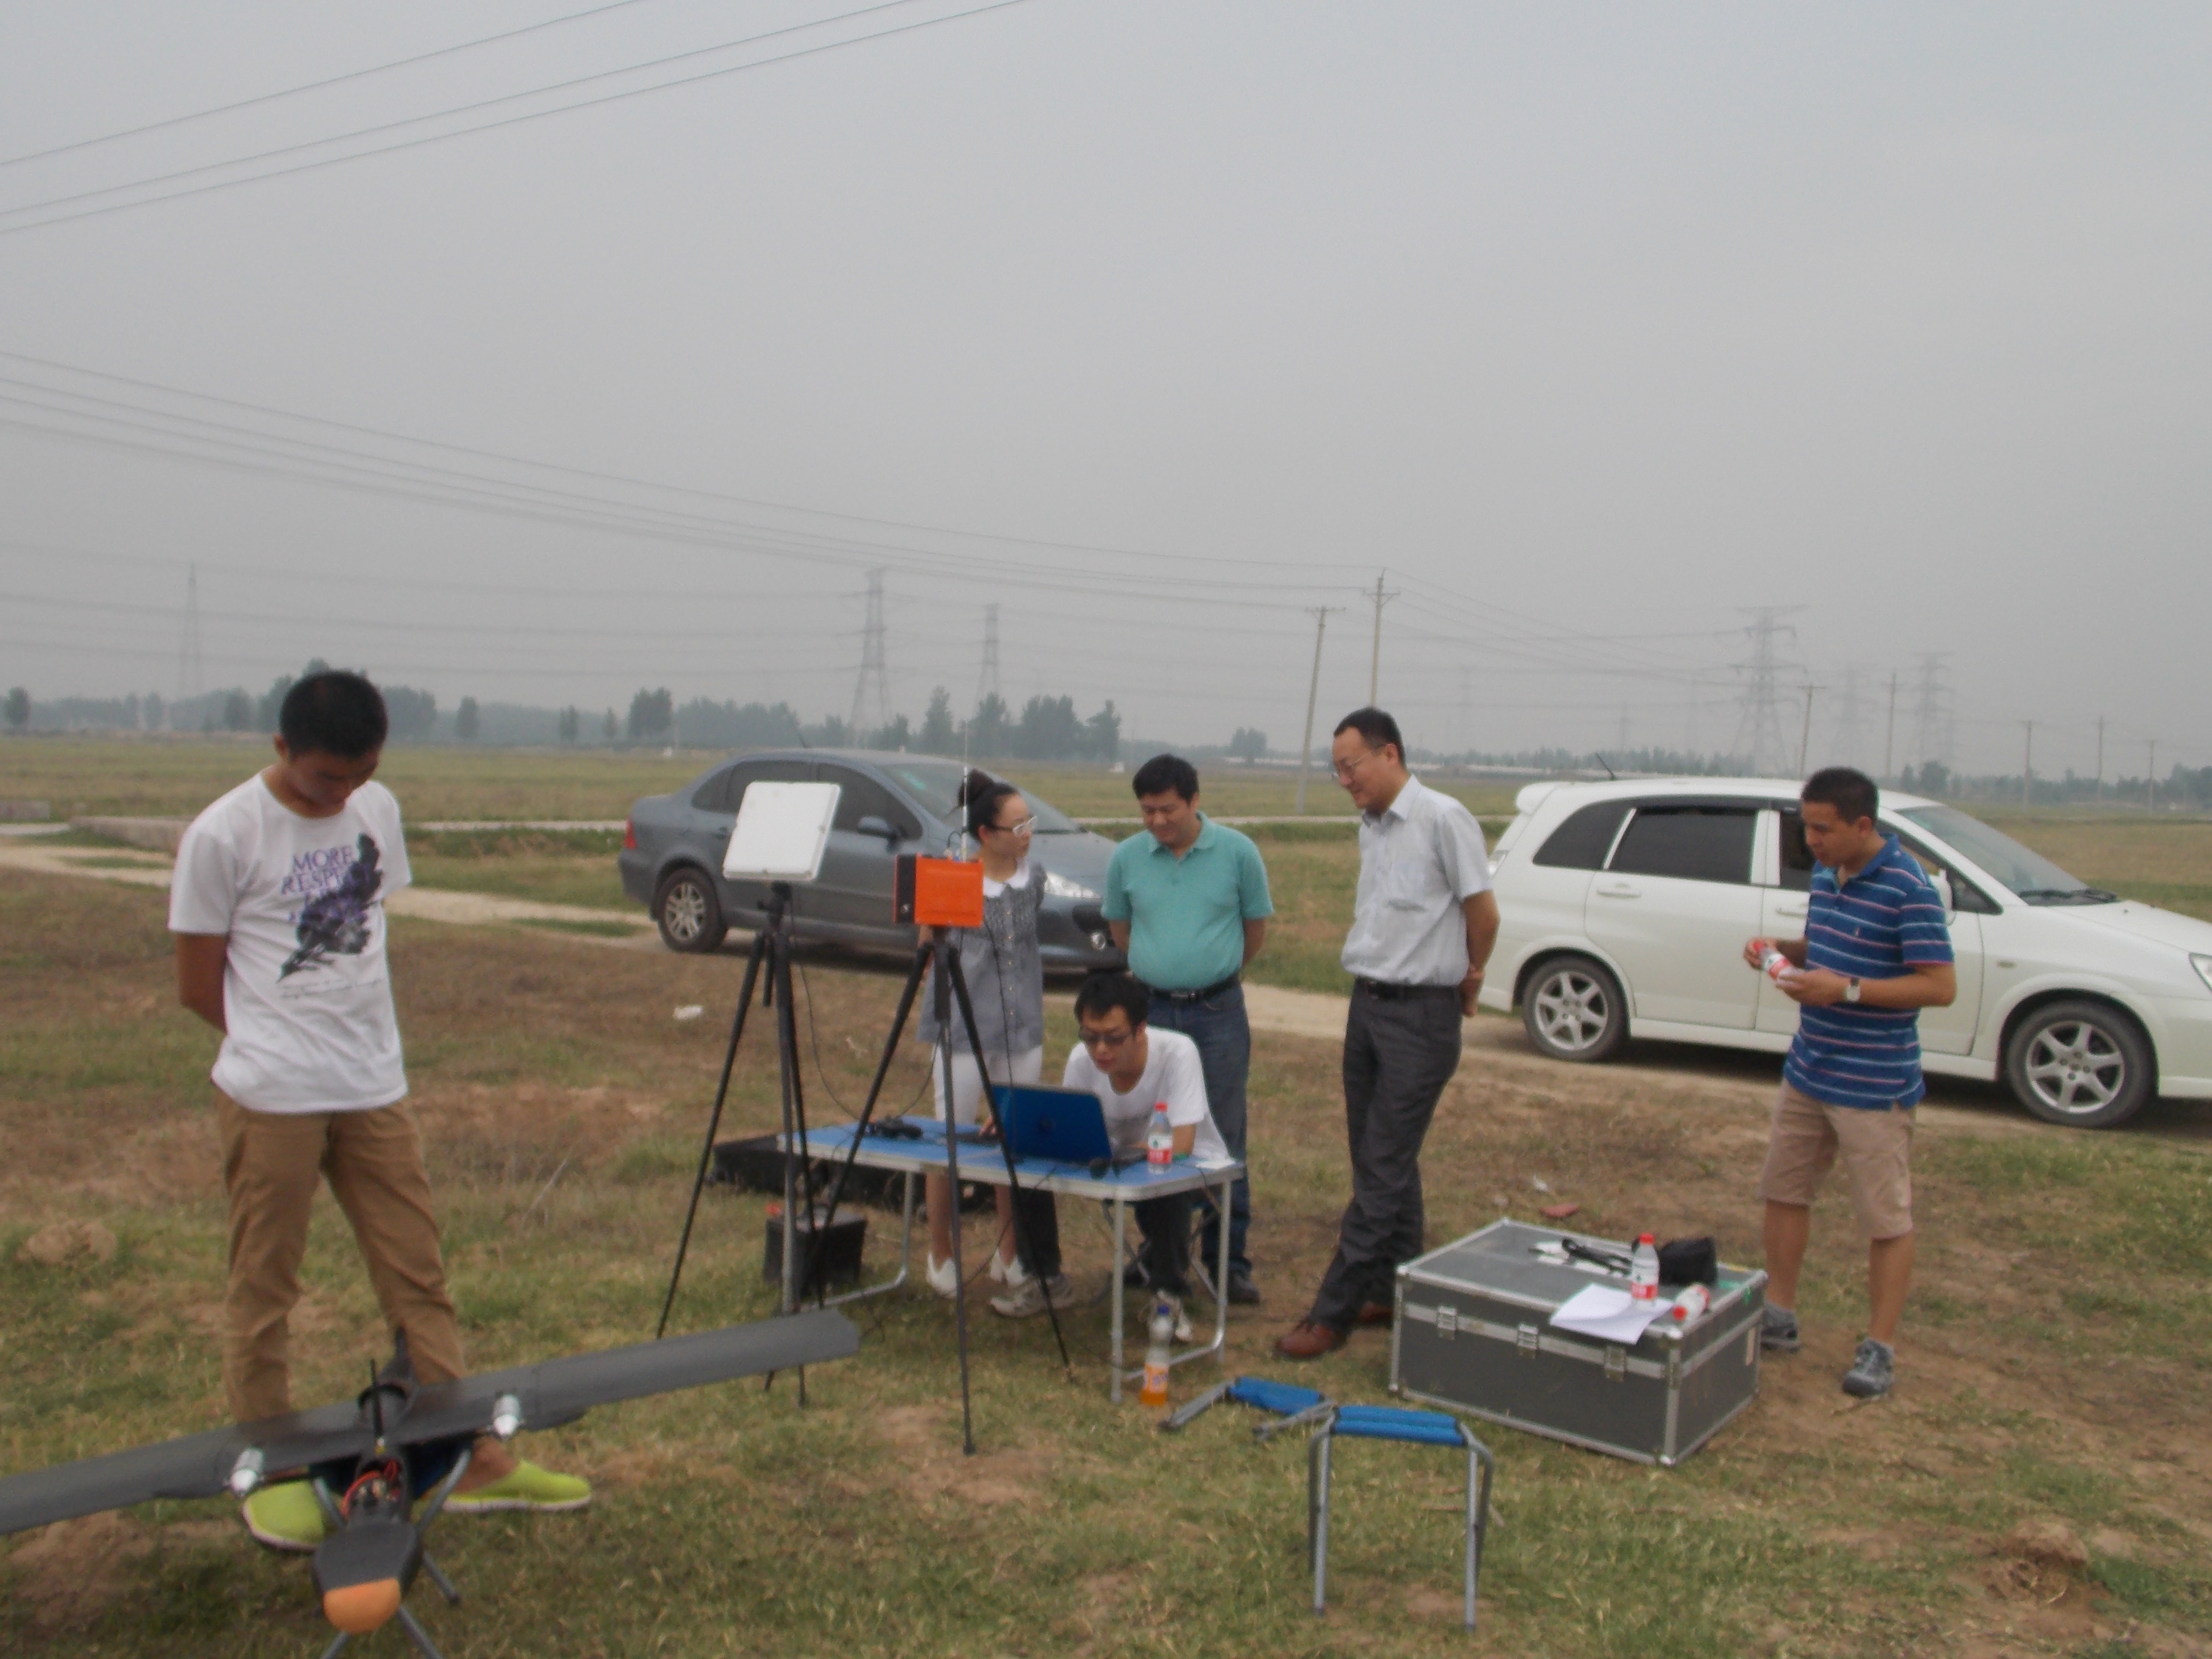 郑州机场至周口西华高速公路二期改线工程无人机航空摄影测量顺利完成  